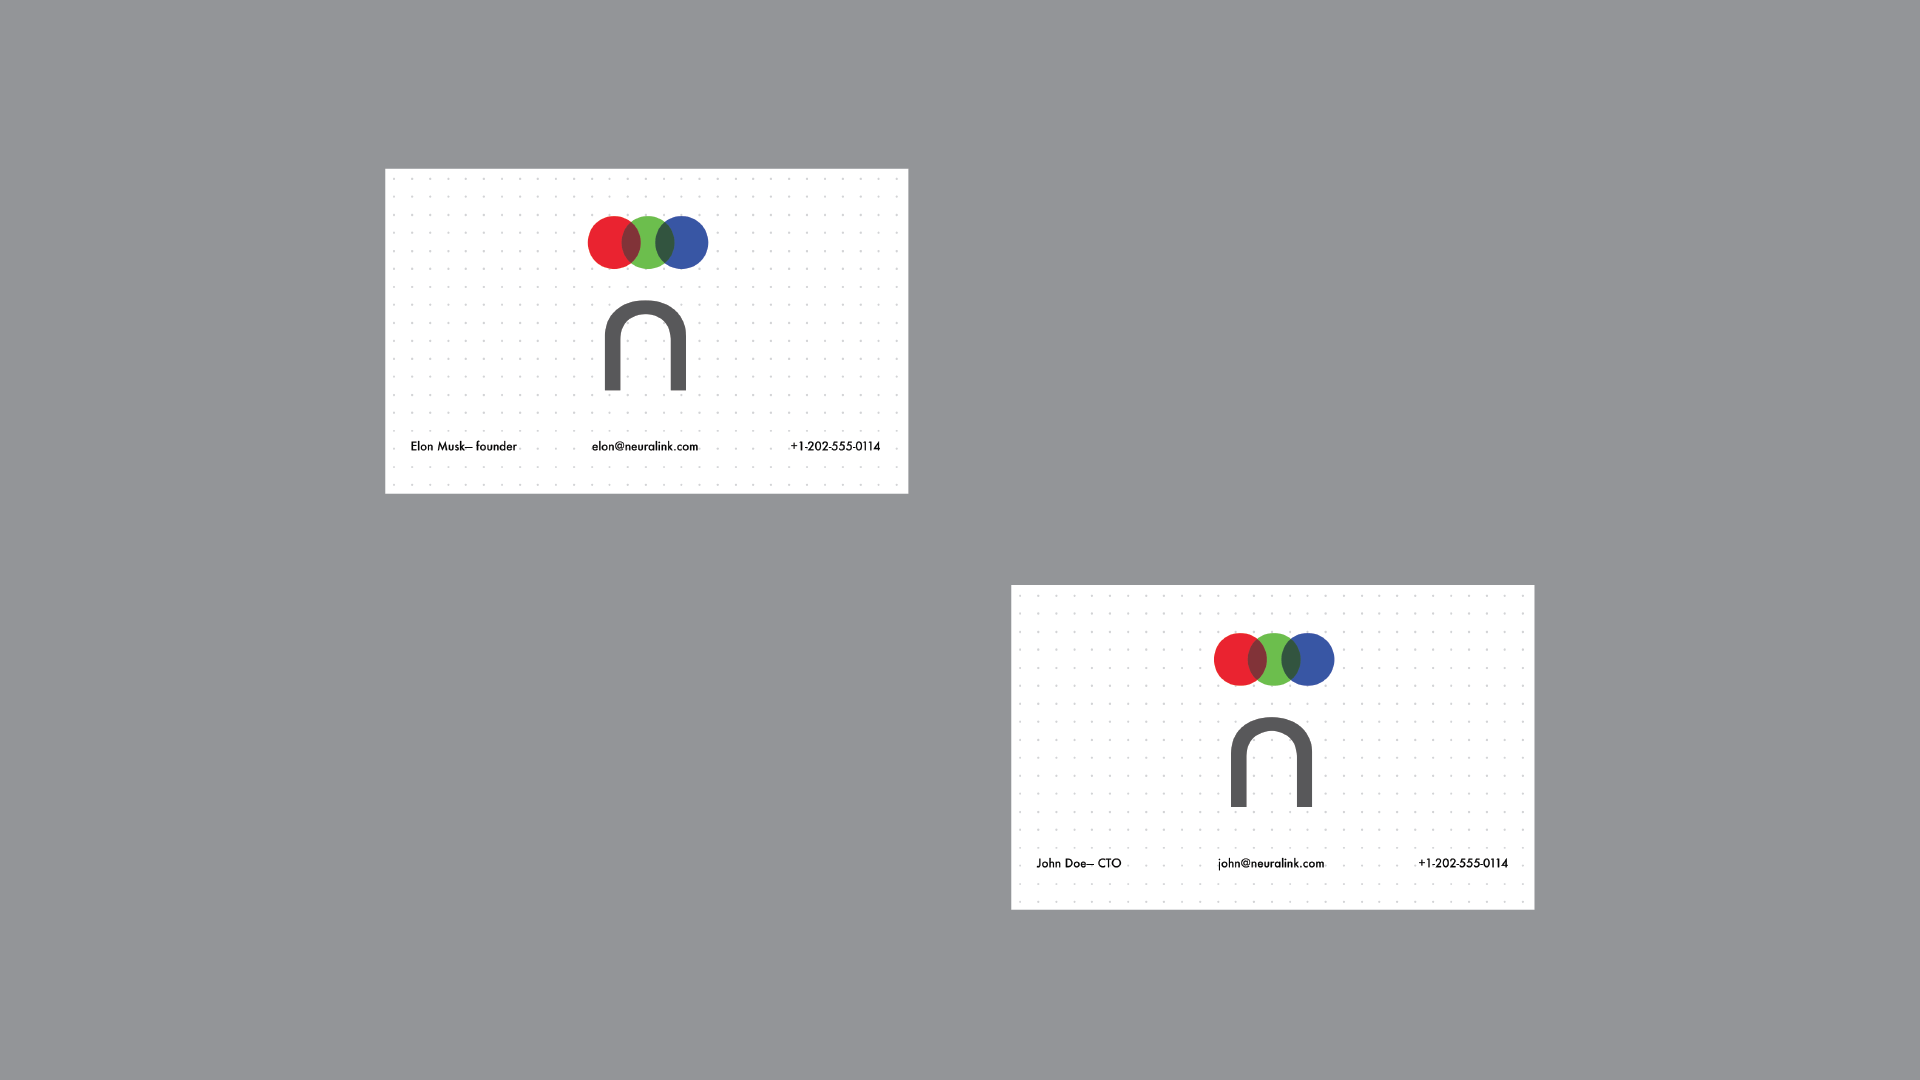 Neuralink Logo - Neuralink Branding on Behance